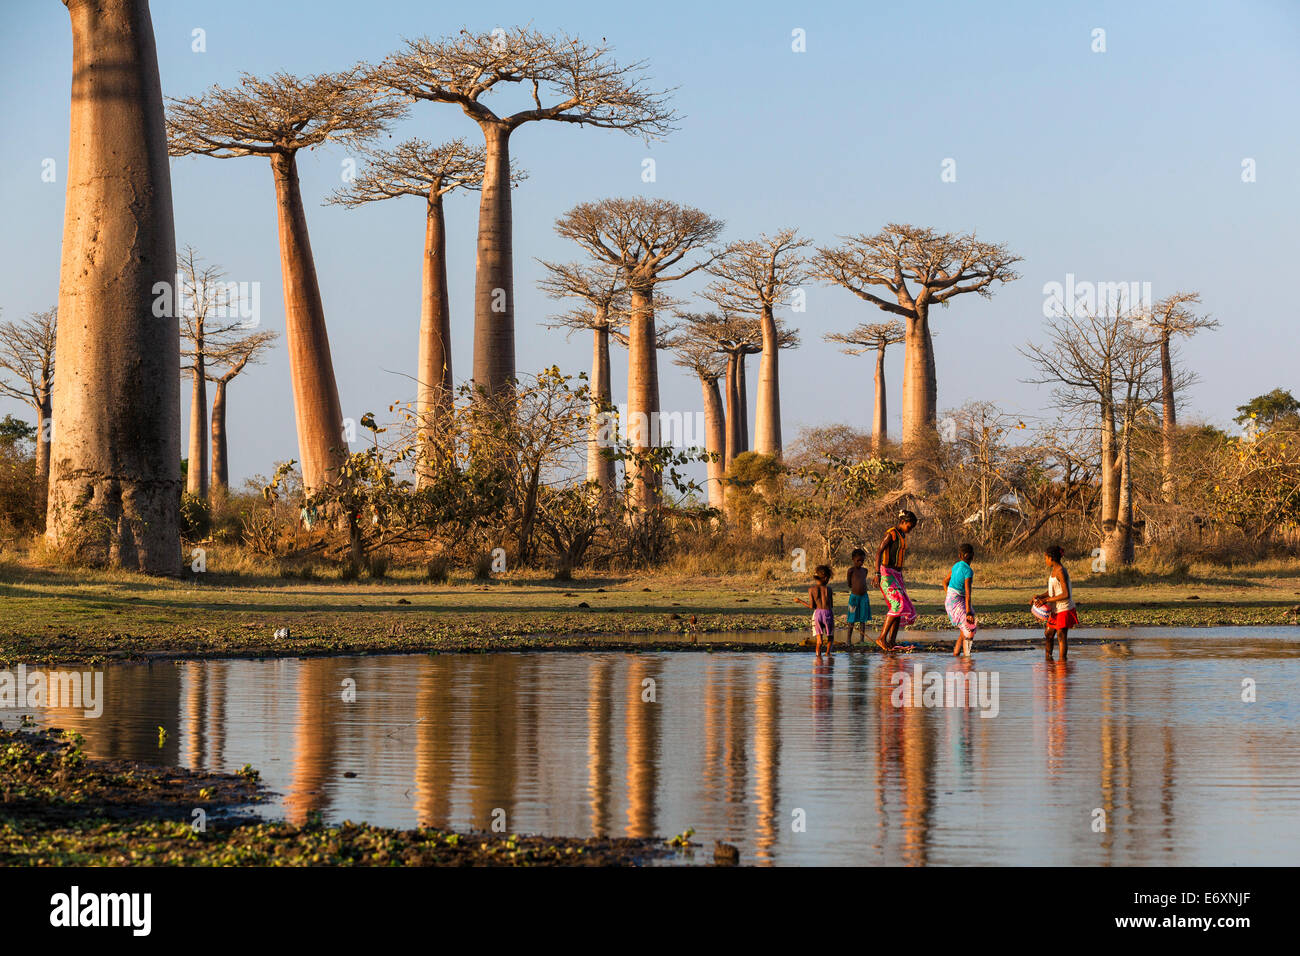 Los baobabs, Adansonia grandidieri cerca de Morondava, Madagascar Foto de stock